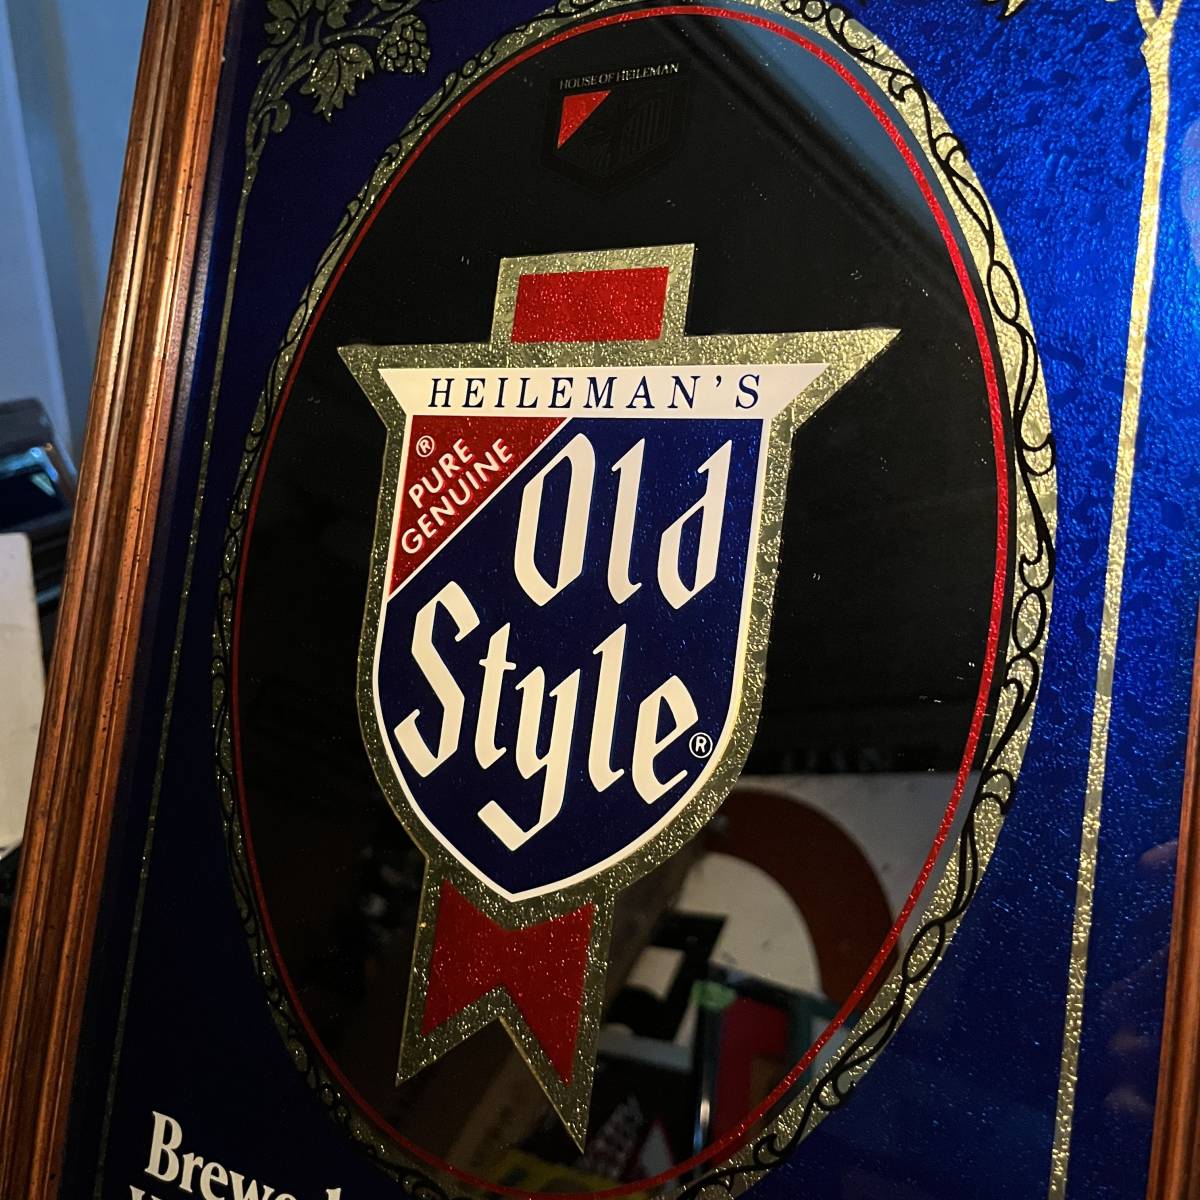 【パブミラー】1980s HEILEMAN'S OLD STYLE オールドスタイル Pub Mirror Bar Mirror バーミラー ブルー ビール 企業物 お酒 80s